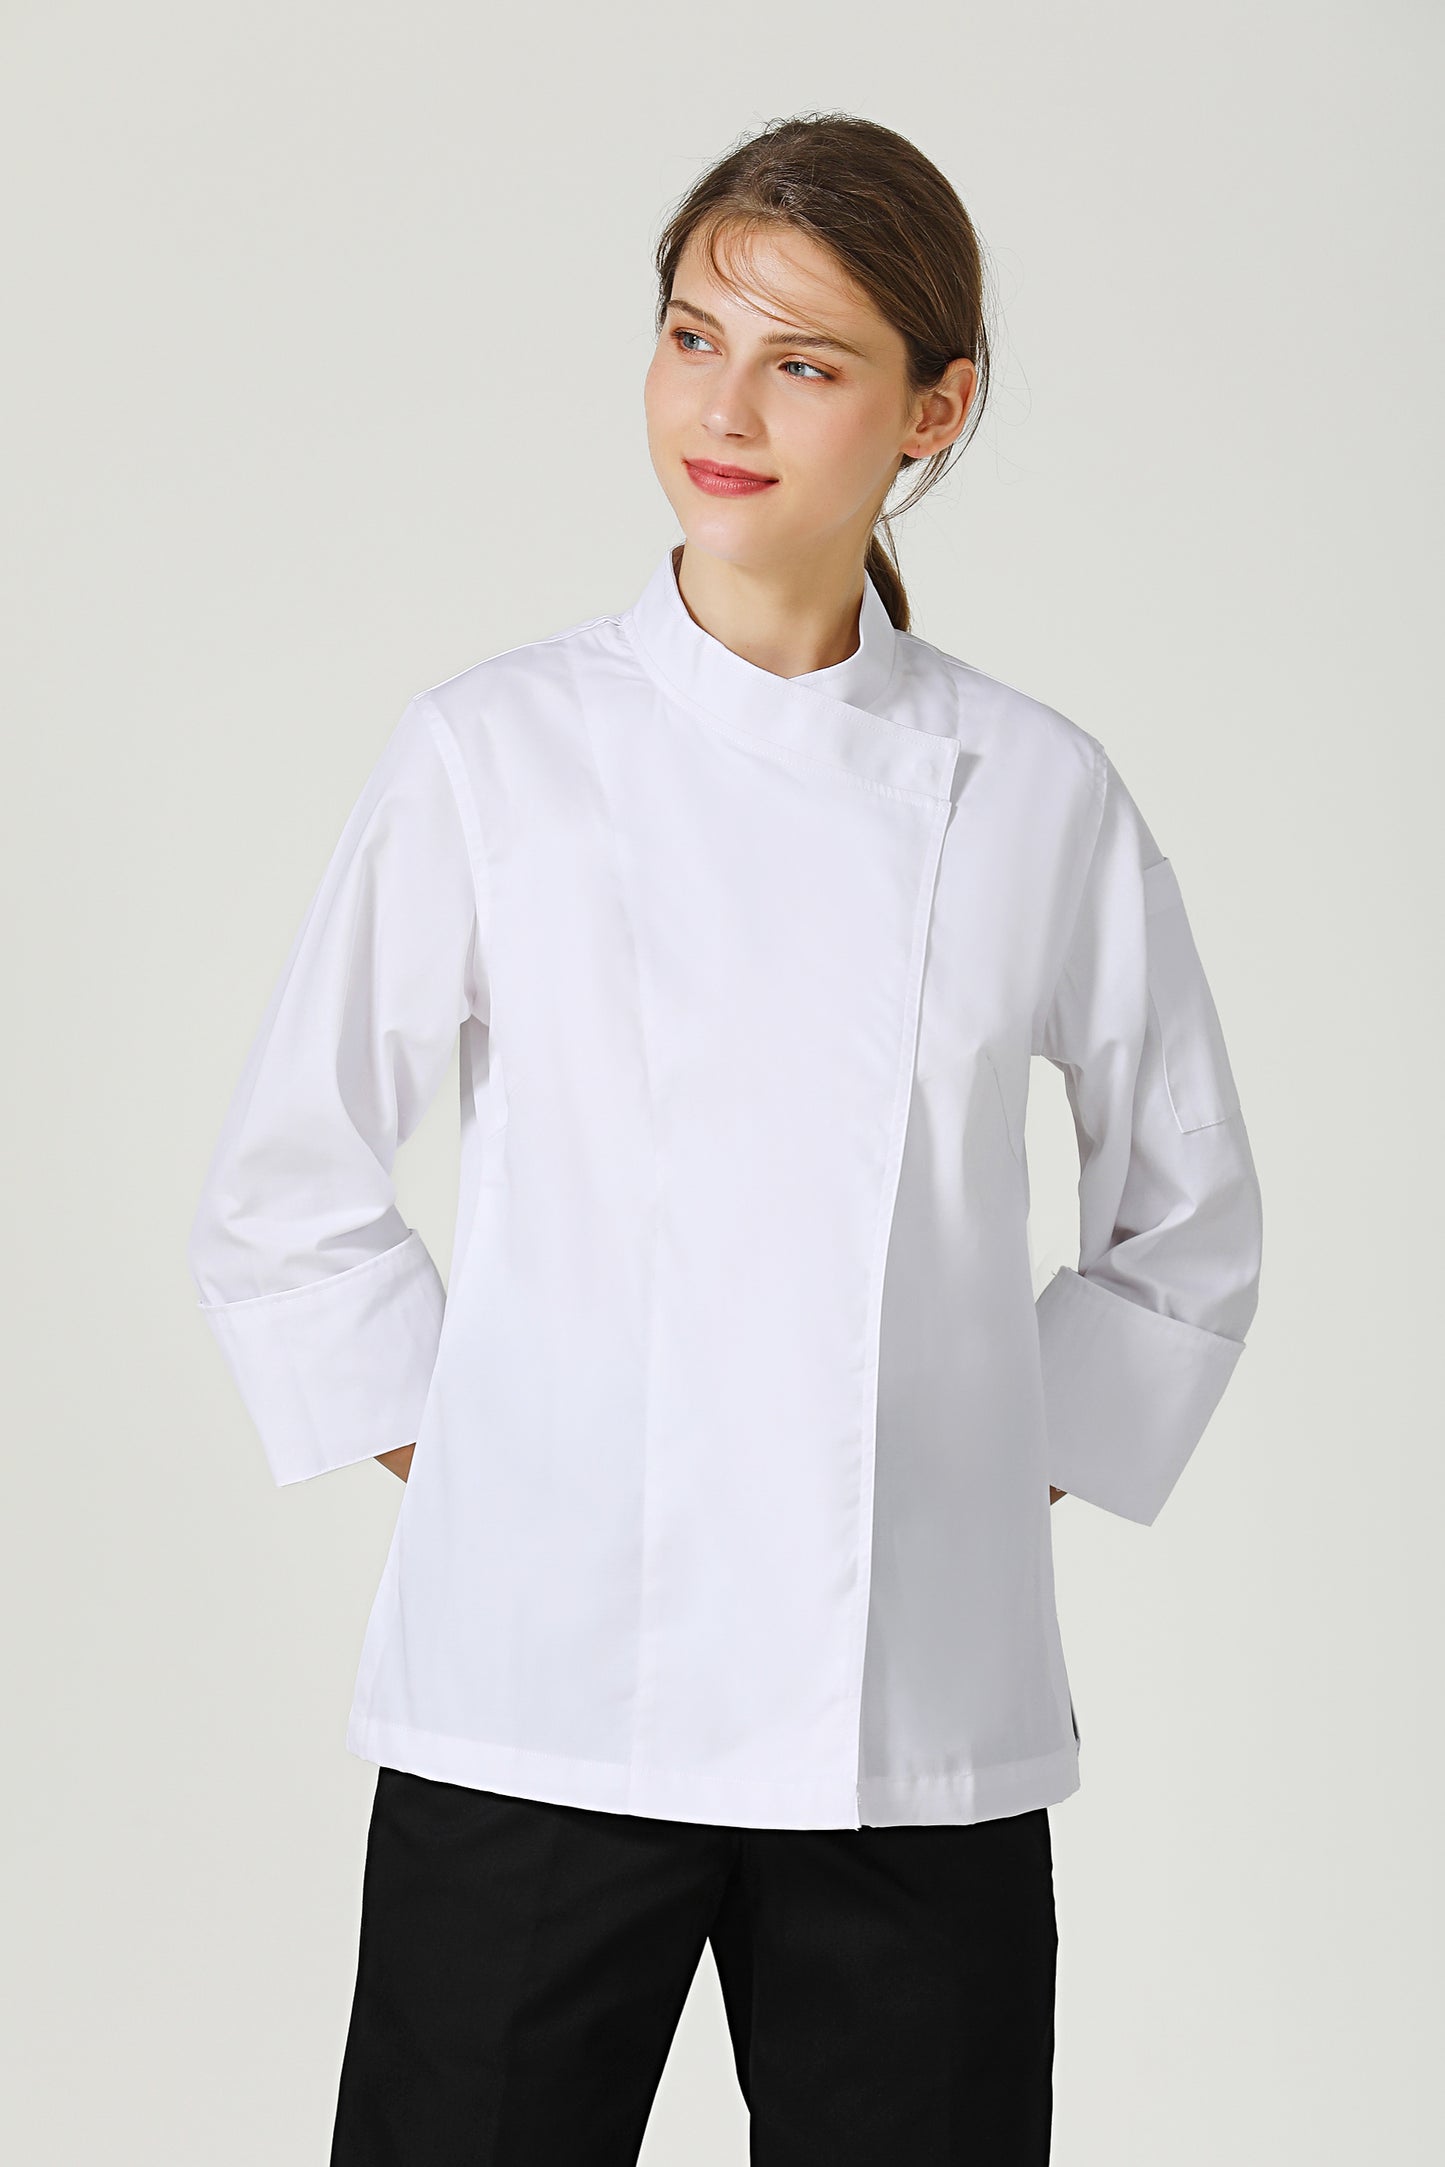 Rosemary White Chef Jacket, Long Sleeve